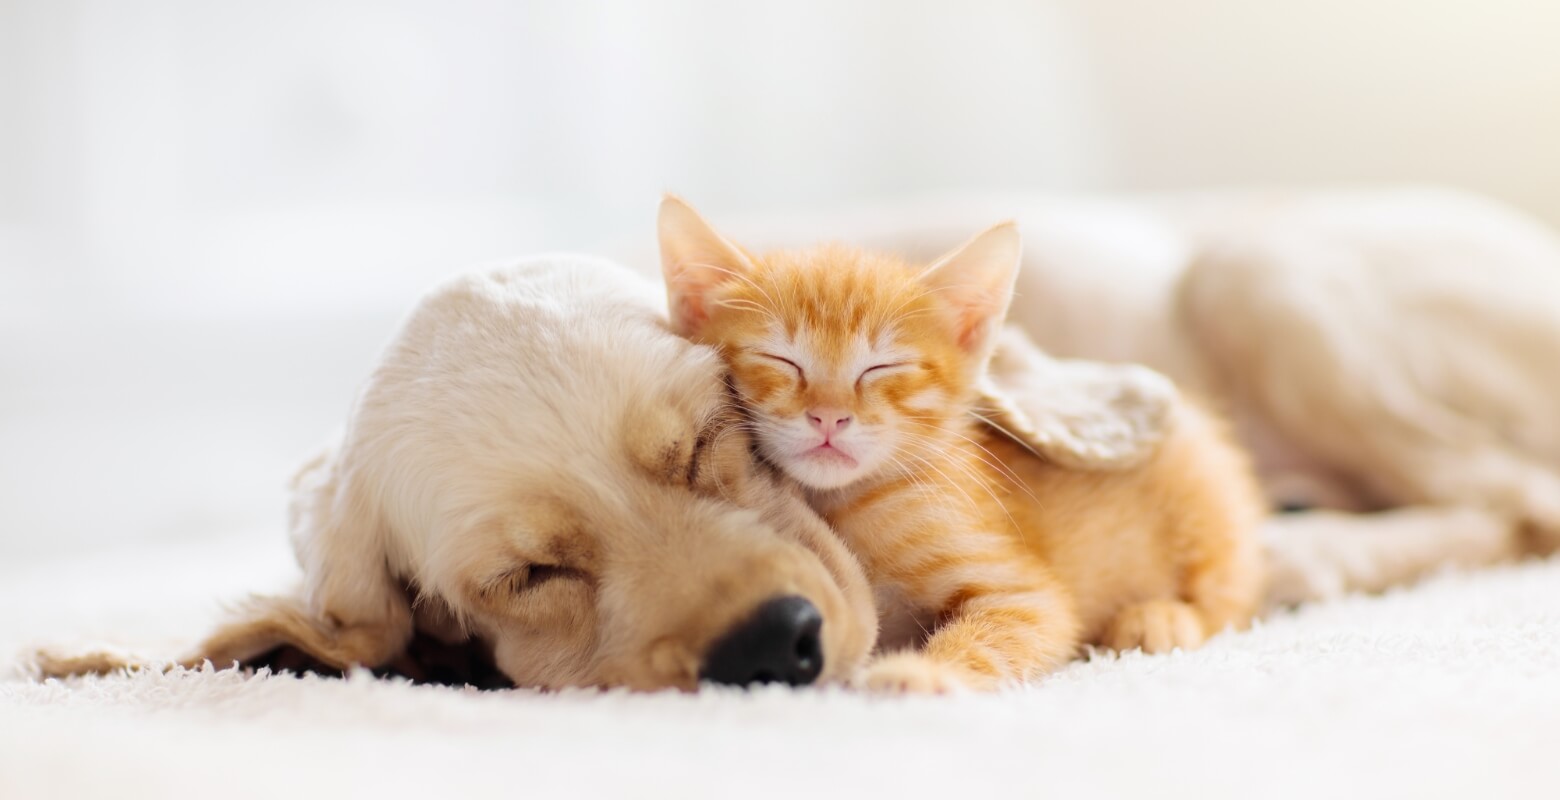 犬と猫が一緒に昼寝をしている画像